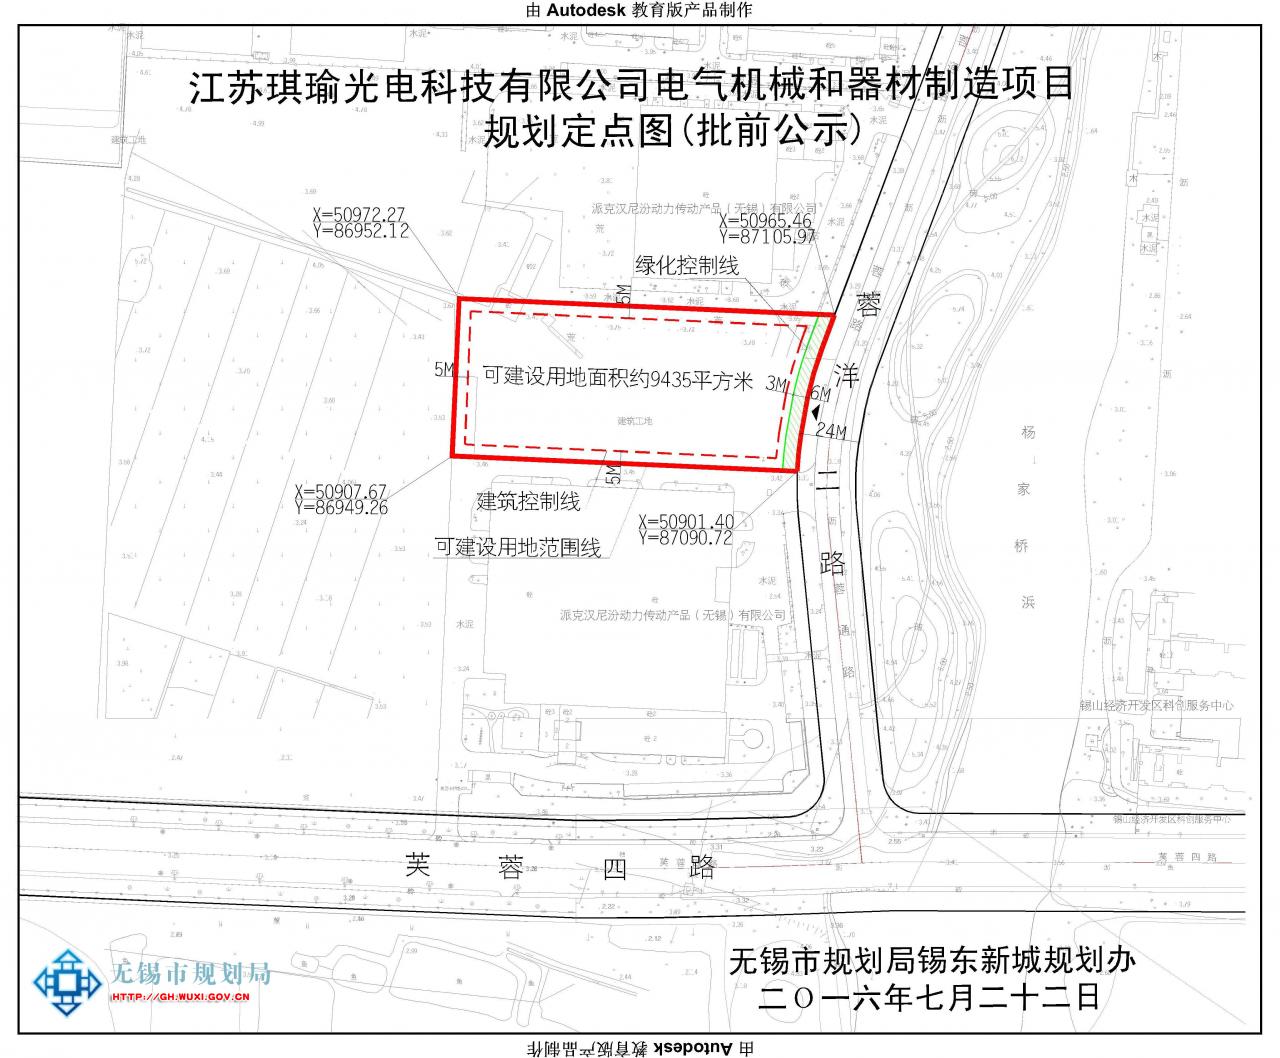 江苏琪瑜光电科技有限公司电气机械和器材制造项目建设用地规划许可证批前公示